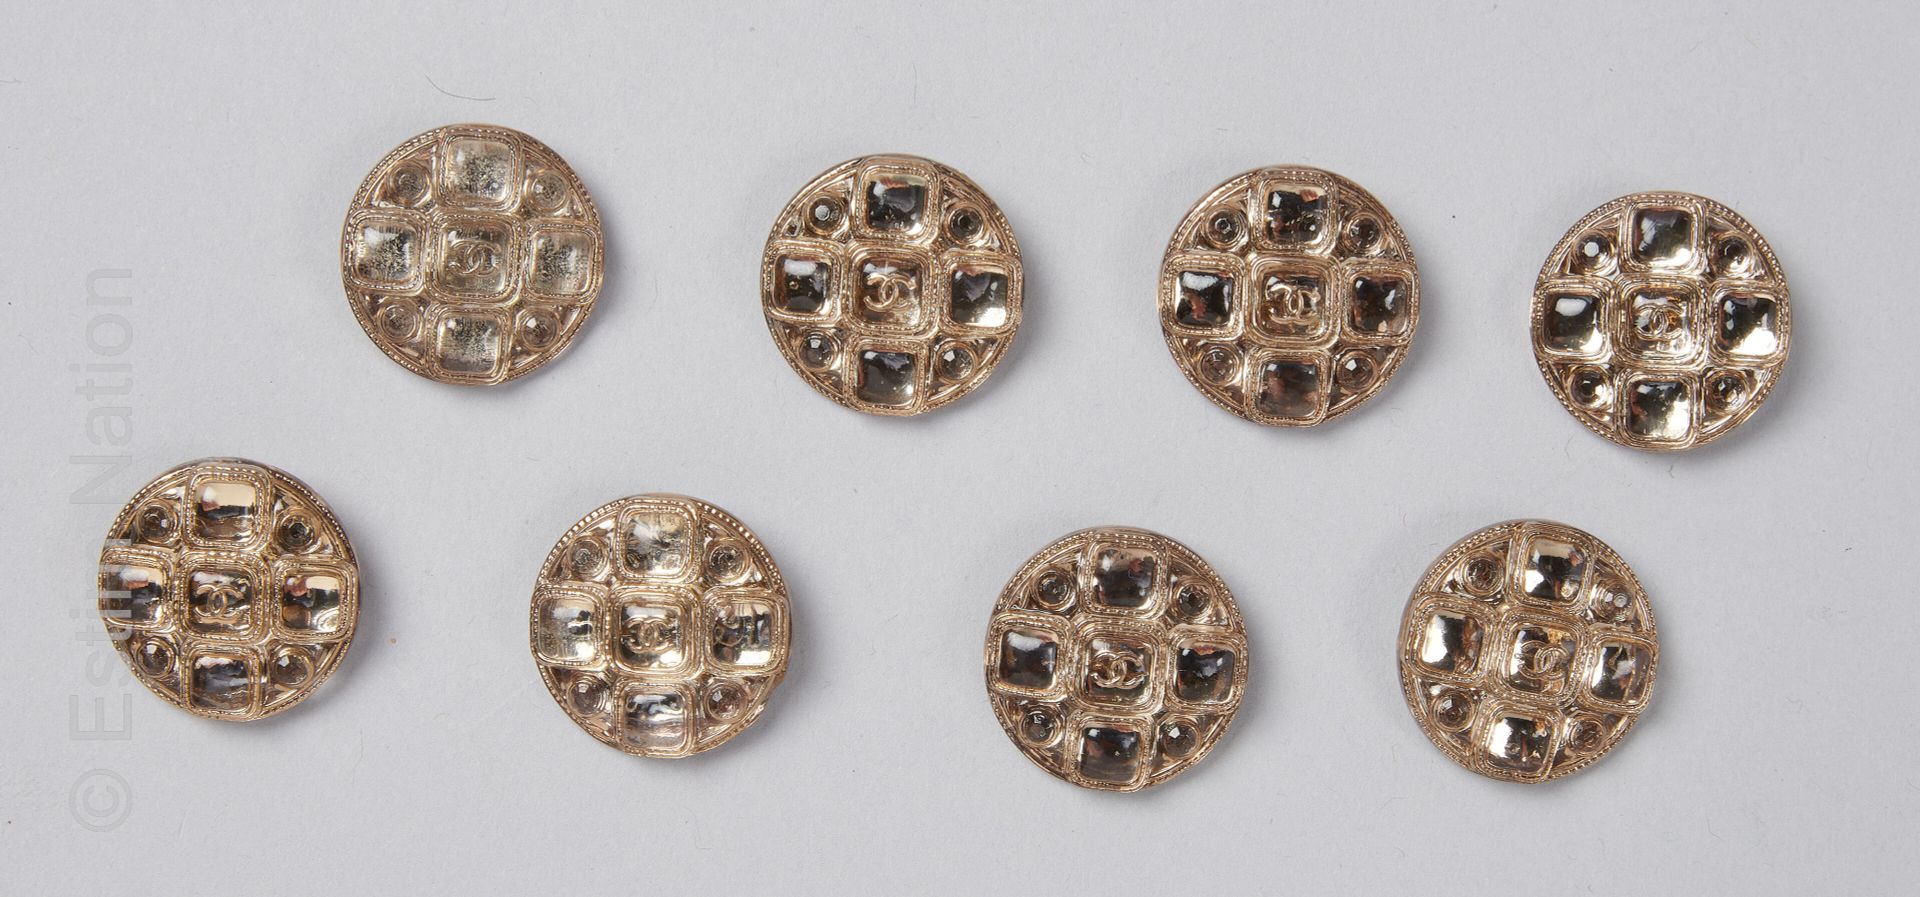 CHANEL 一套8个金属按钮和烟熏玻璃凸面体（直径：2.1厘米）（薄荷状态）。